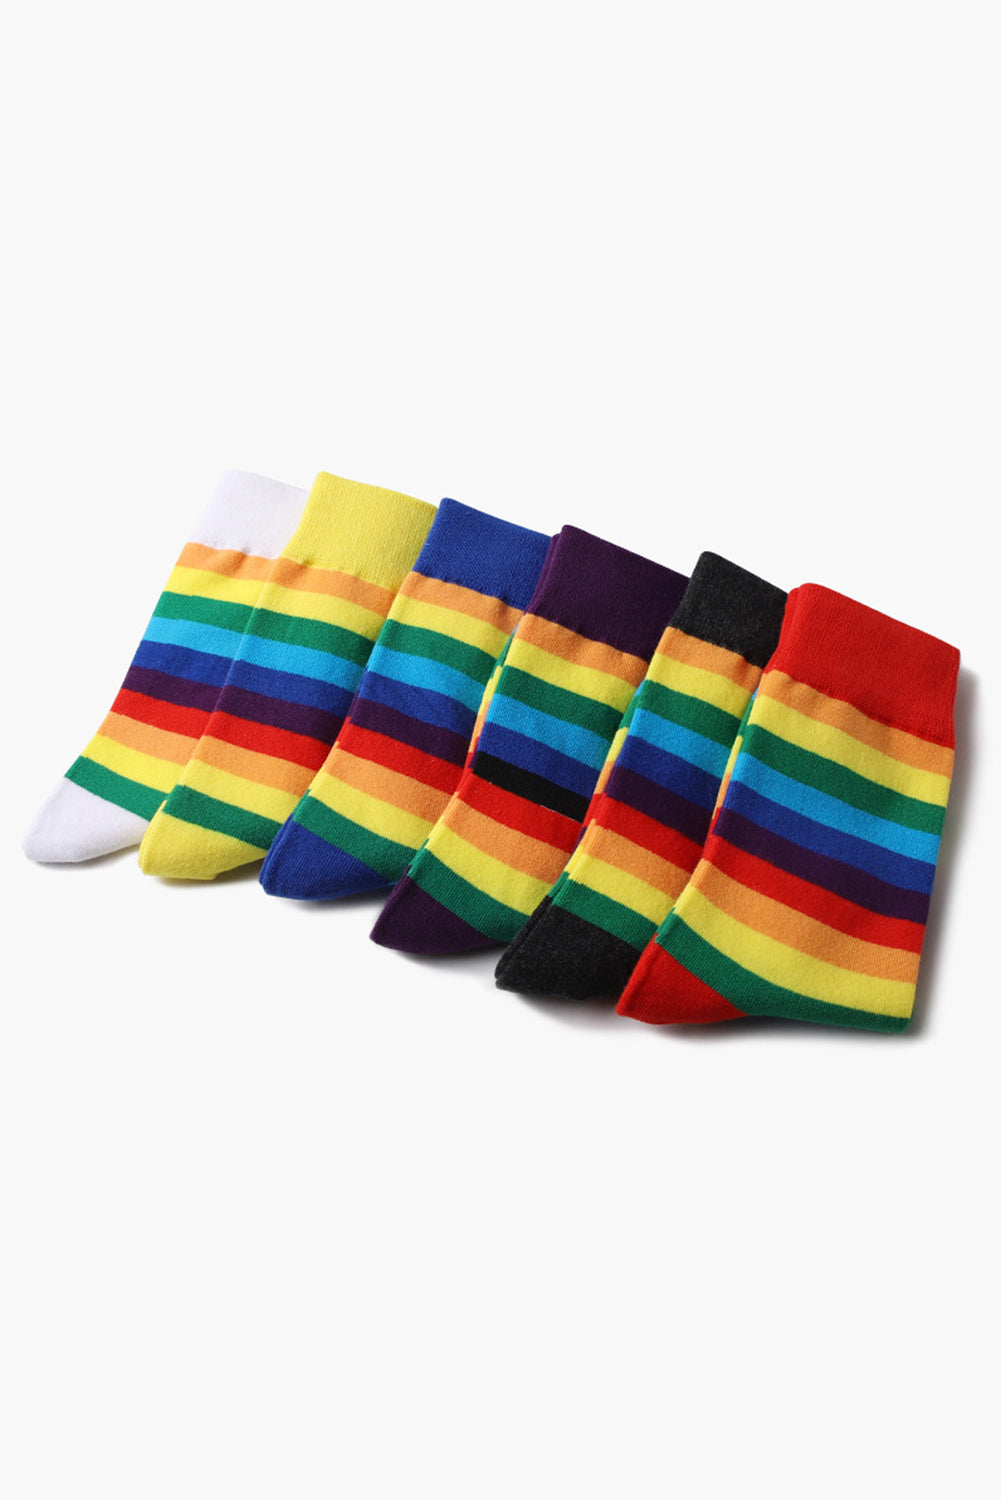 BH041619-7, Yellow Pride Sport Socks Men Women Rainbow LGBTQ Accessories Socks